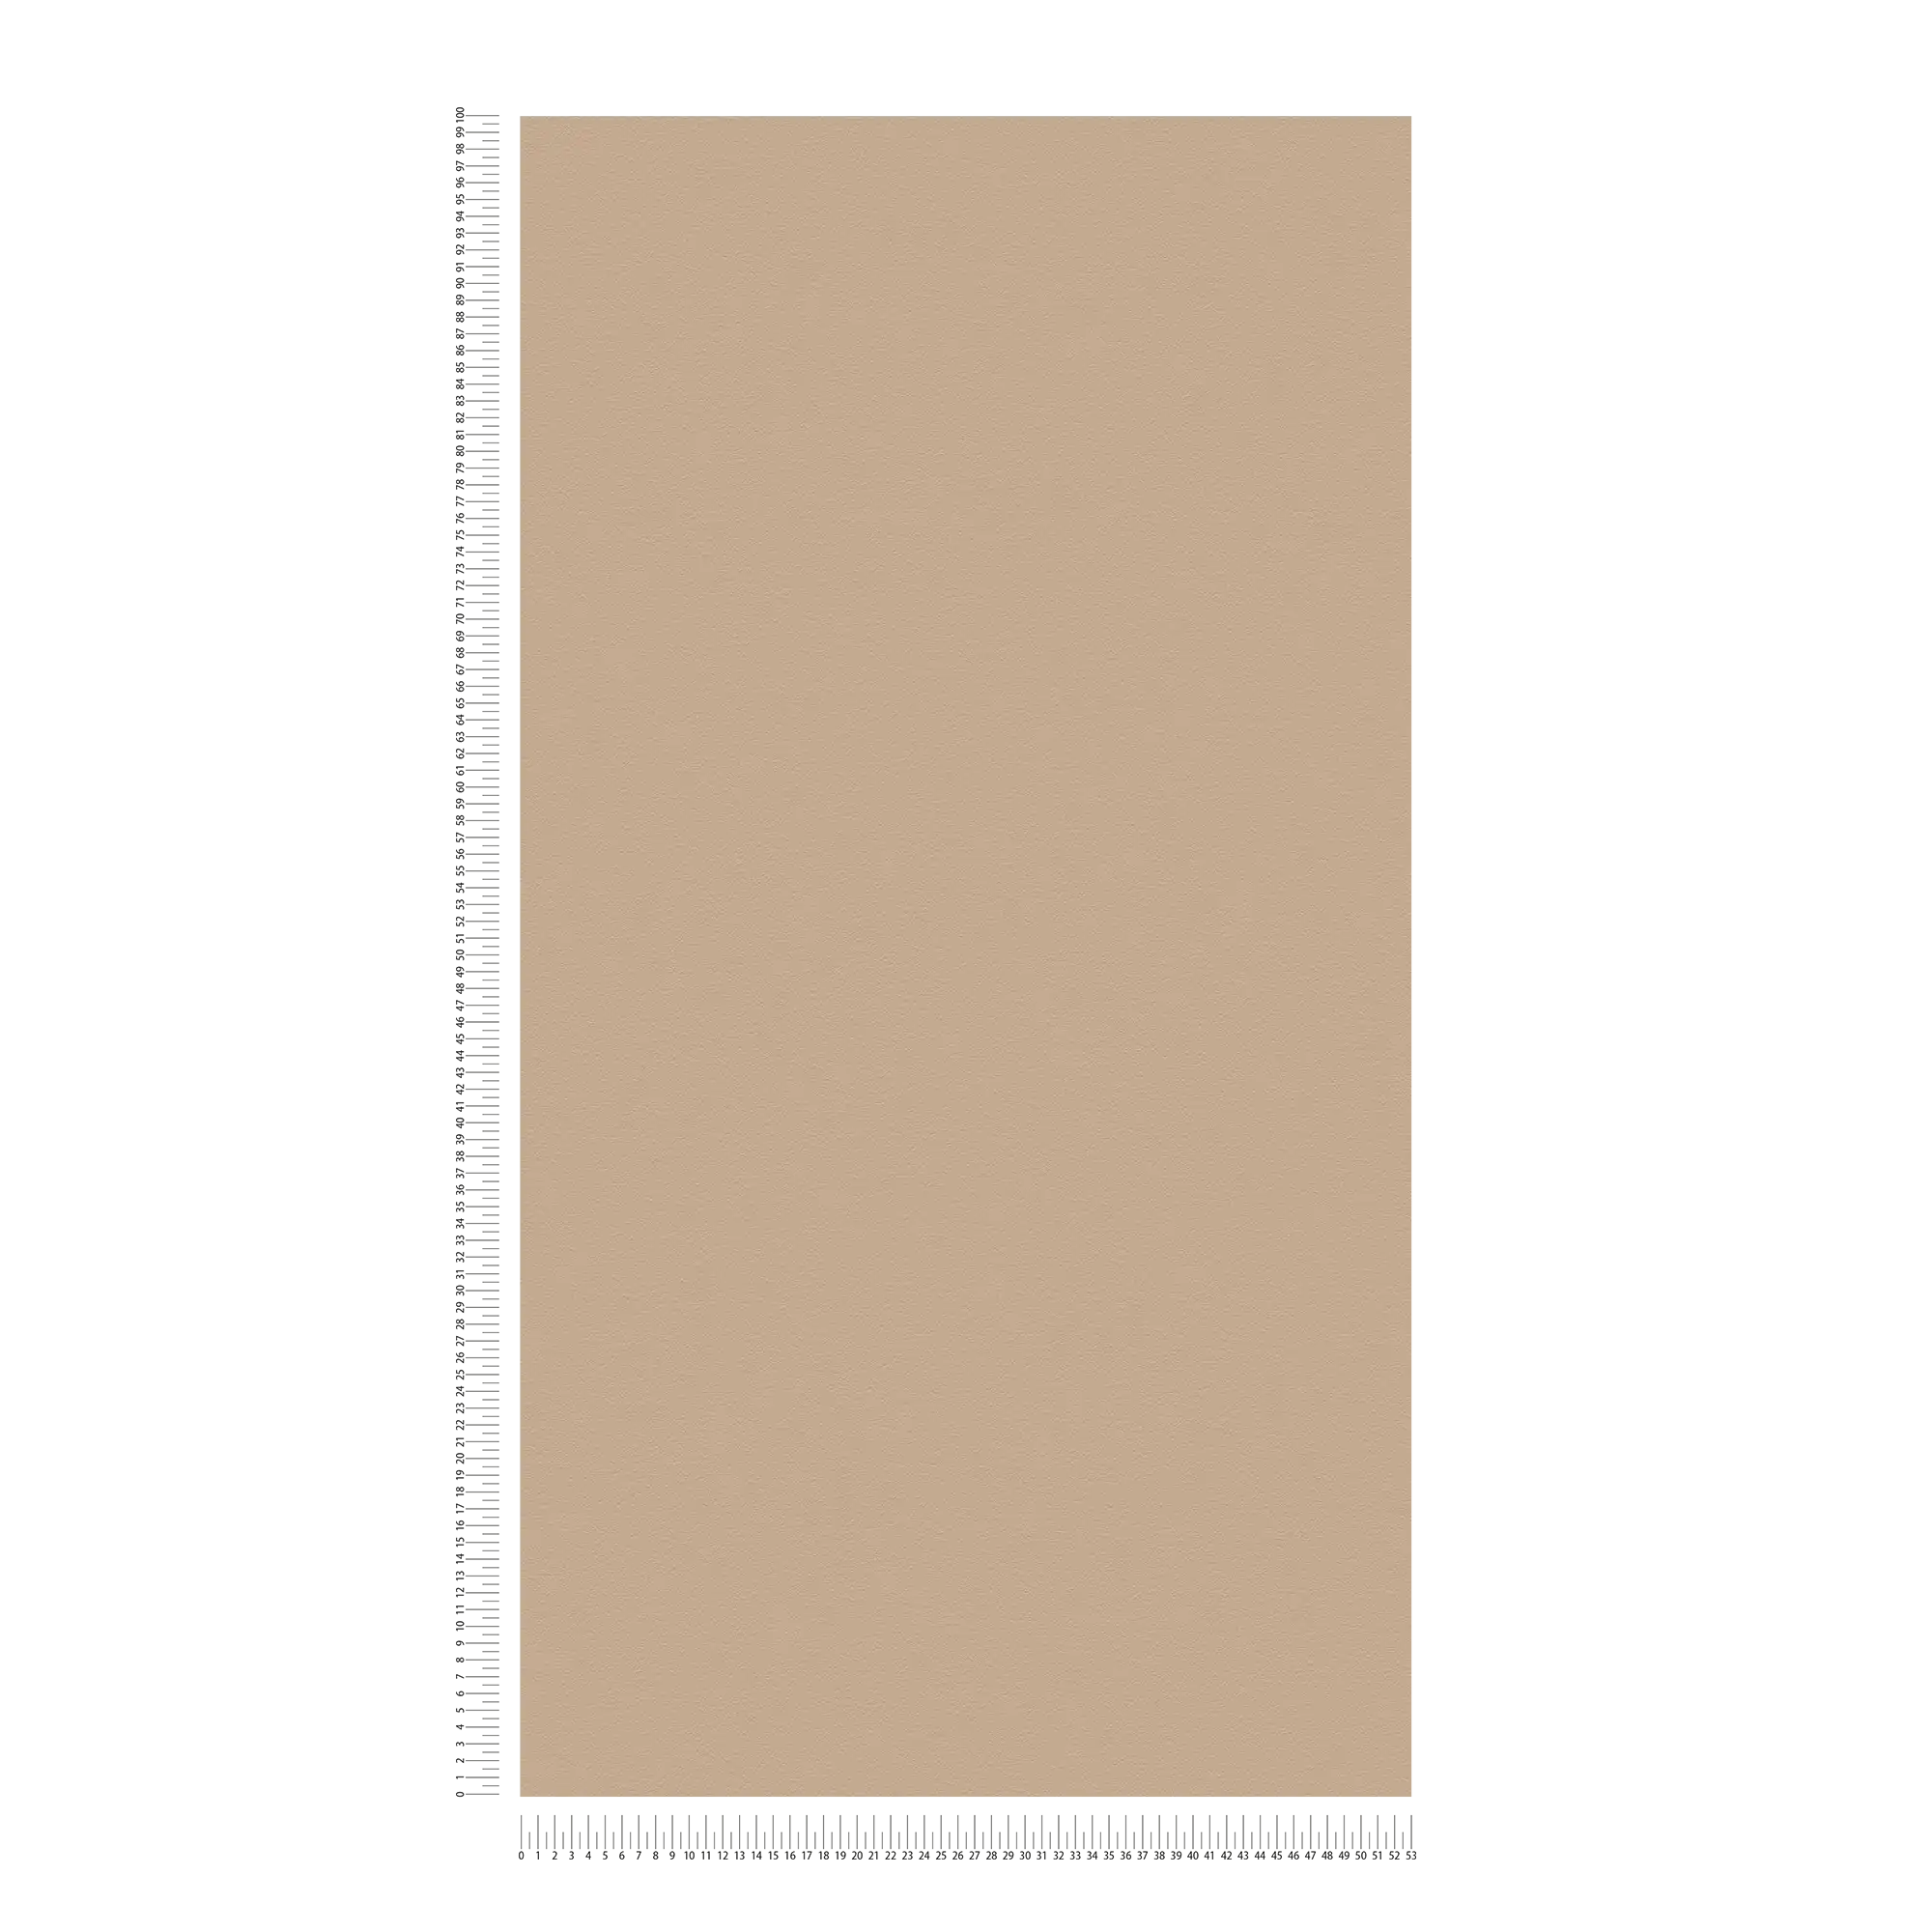             Einfarbige Tapete Hellbraun mit glatter Oberfläche – Beige, Braun
        